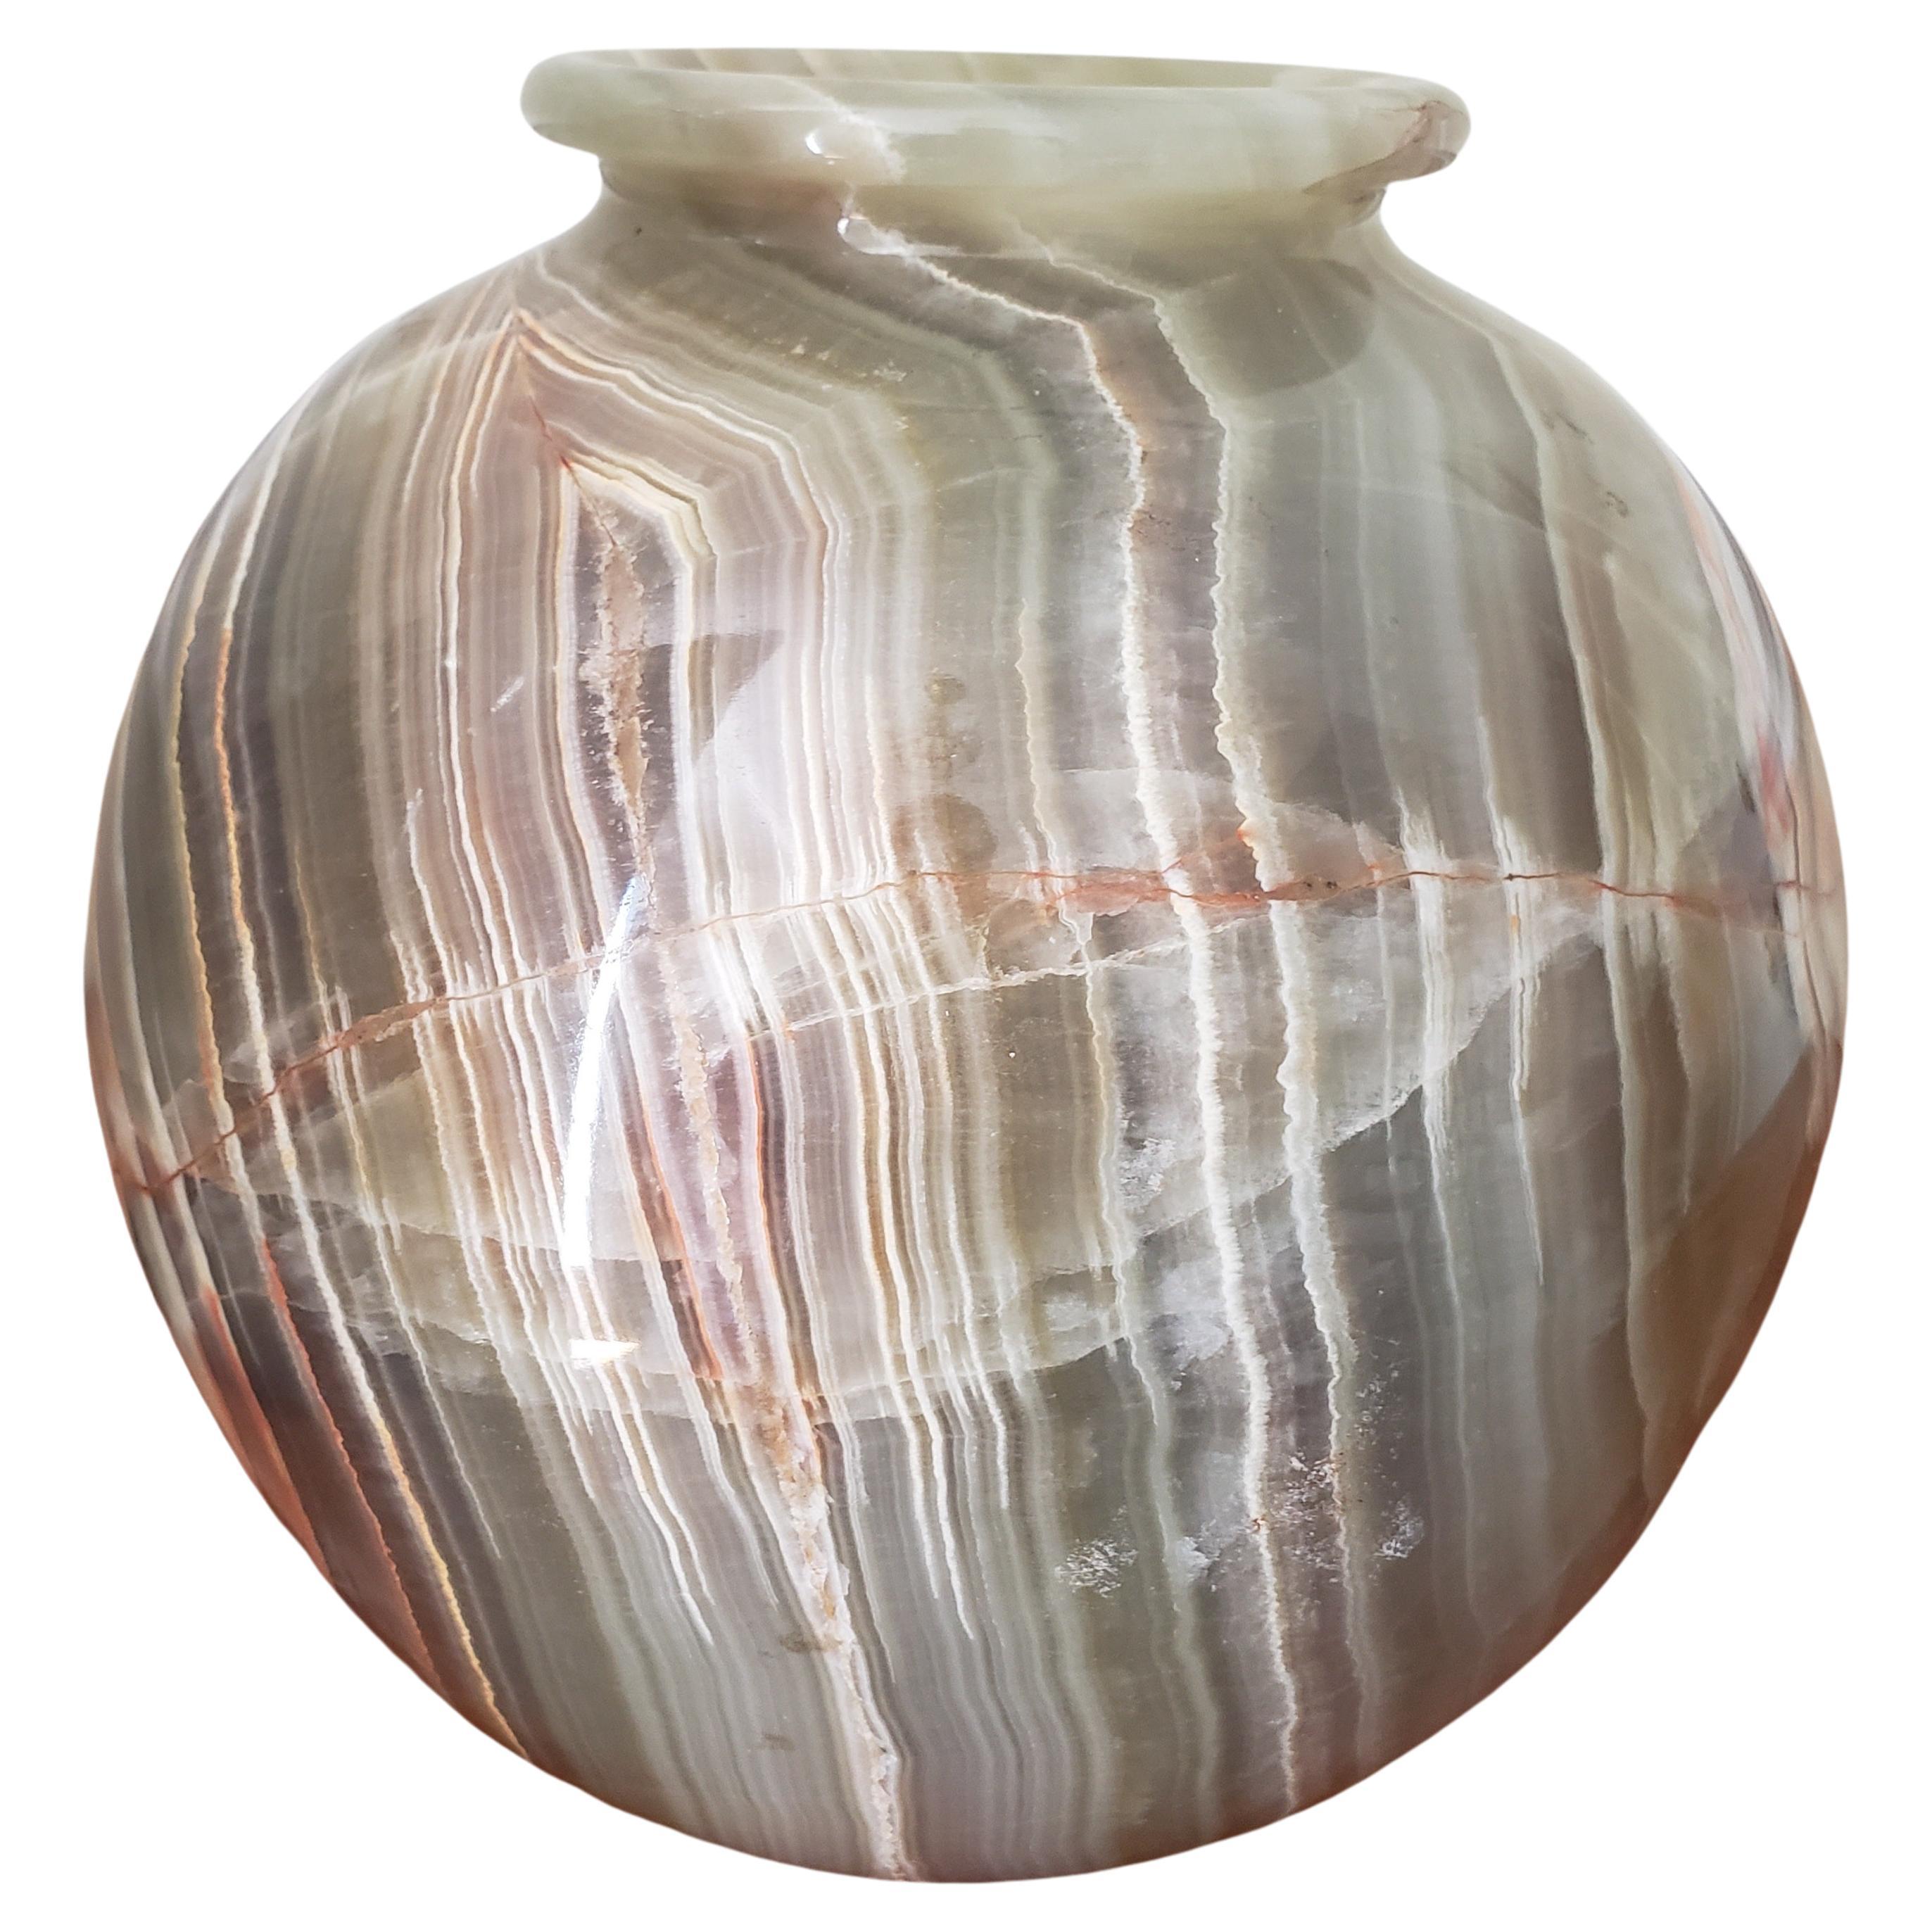 Vase moderne du milieu du siècle, sculpté dans un seul bloc de marbre onyx hautement figuré. D'abord gris riche couleur émeraude avec des centaines de veines alternées, certaines de couleur blanche et d'autres de couleur rouge. Convient à de